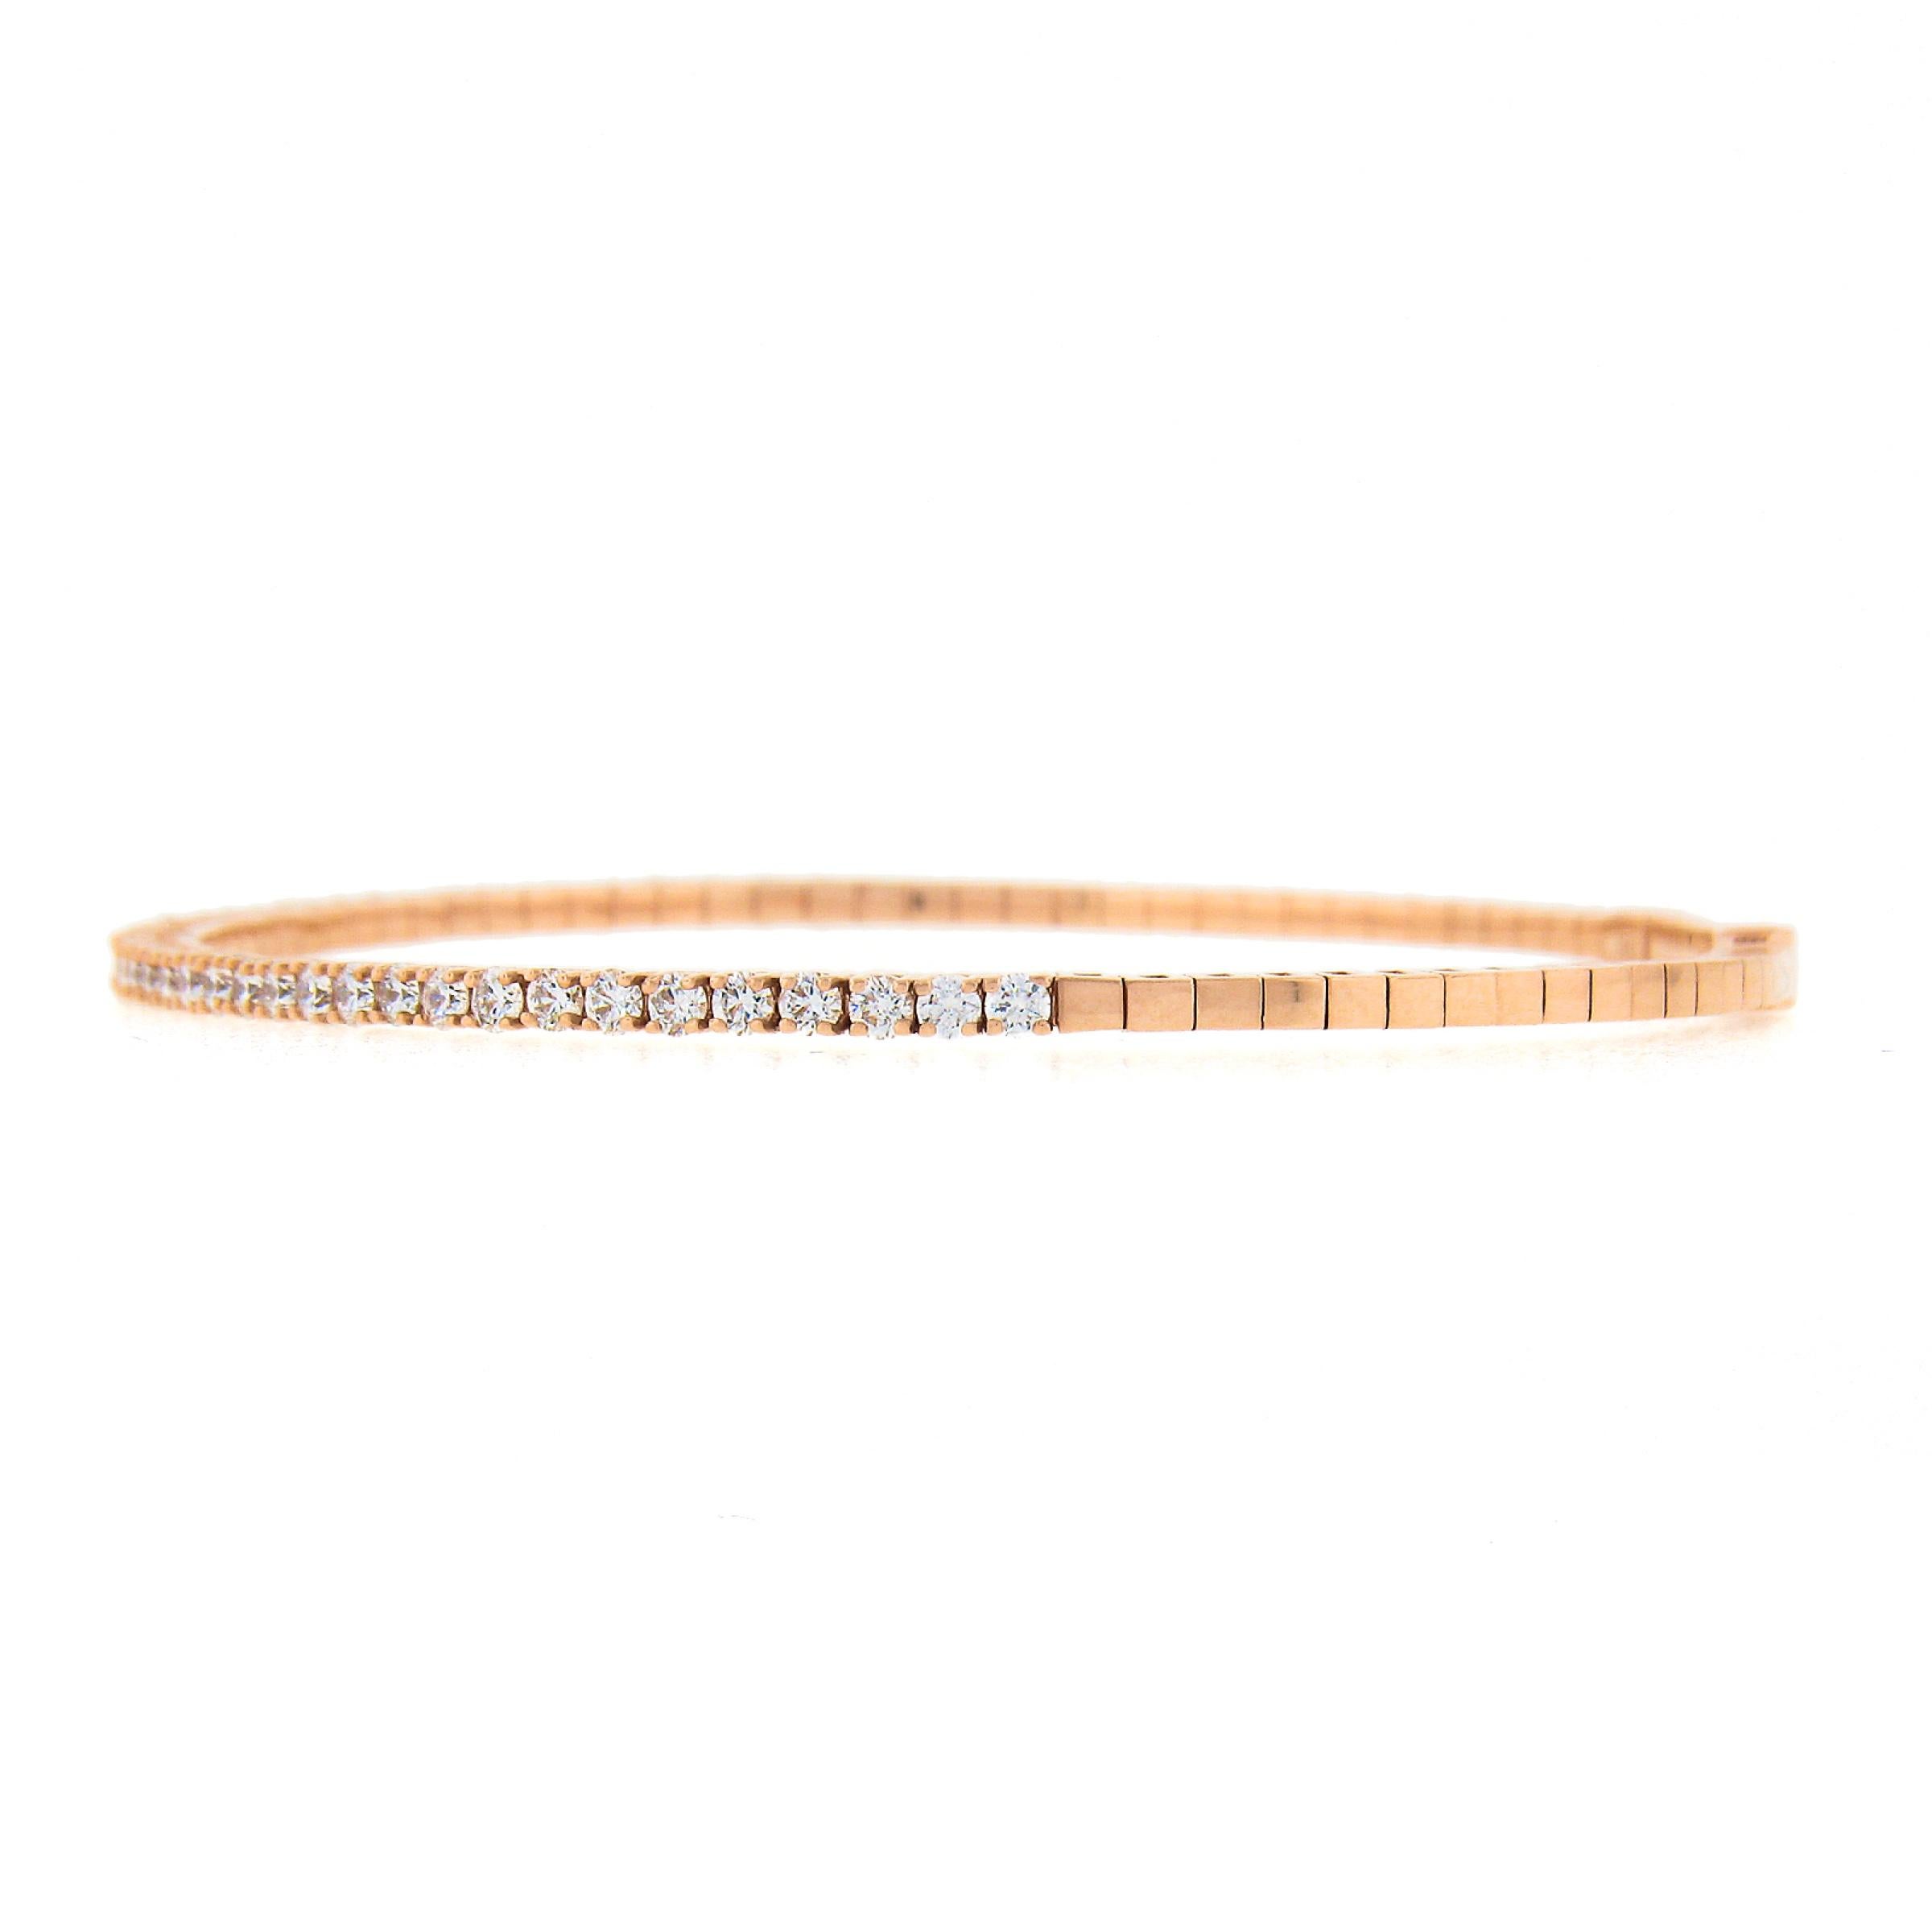 Ce magnifique bracelet semi-flexible a été récemment fabriqué en or rose massif 14 carats et comporte des diamants de très belle qualité soigneusement sertis sur sa partie supérieure. Ces diamants ardents sont de taille ronde et brillante et